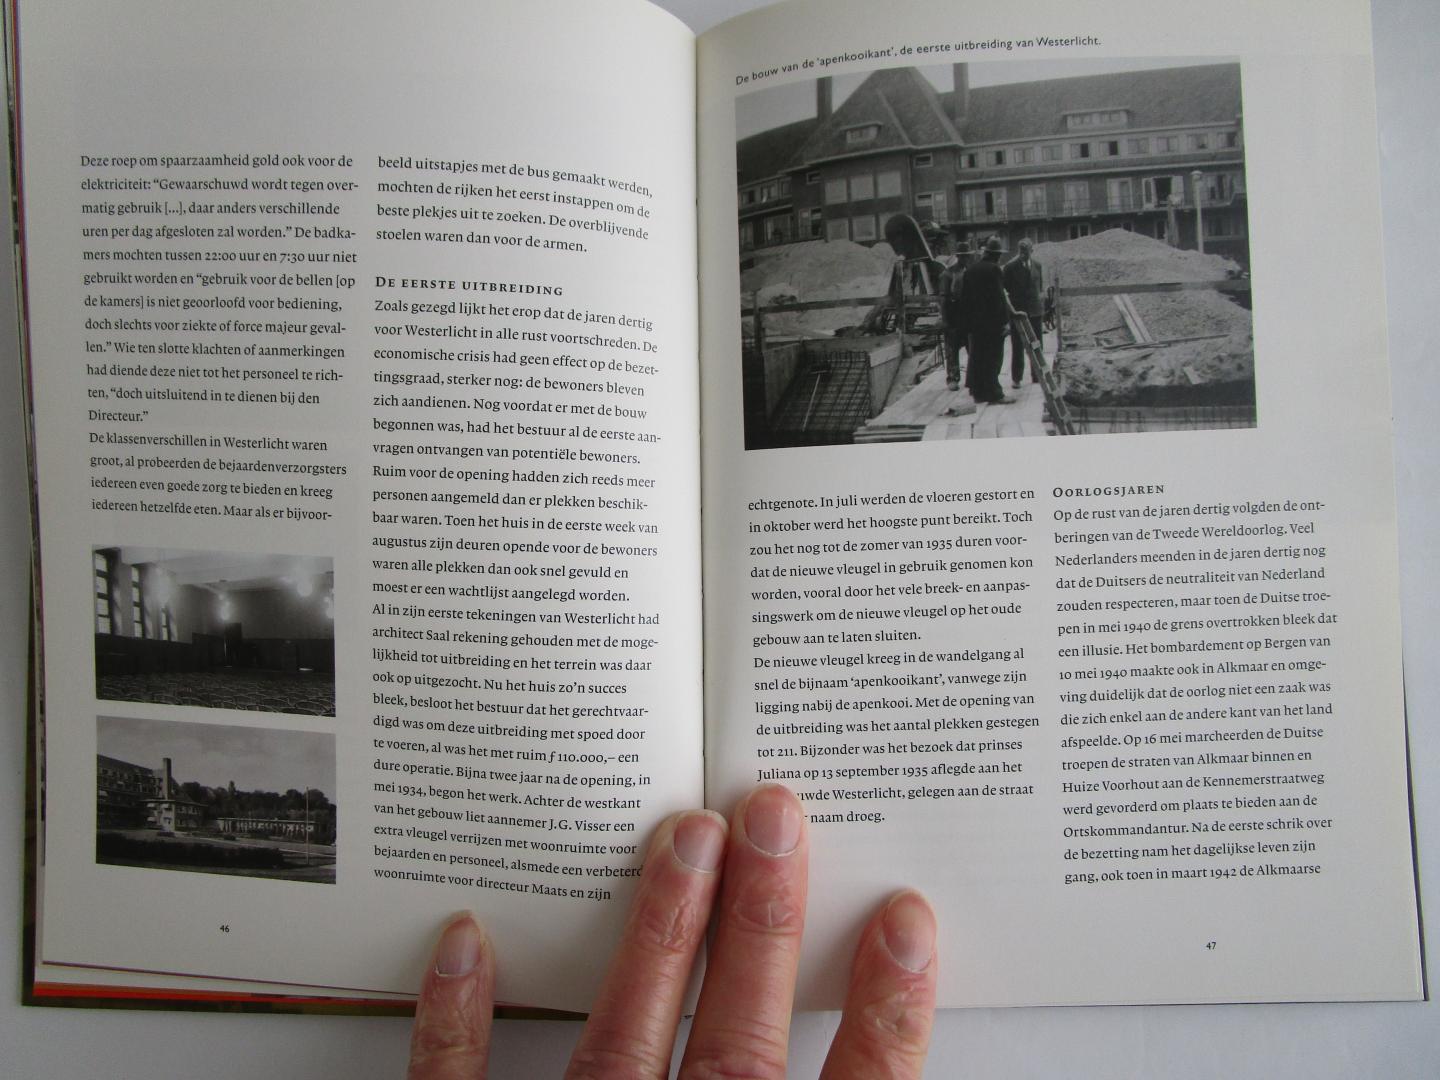 Rijn, Remco van - Westerlicht - de geschiedenis van zorgspectrum Westerhout - (1932-2004)